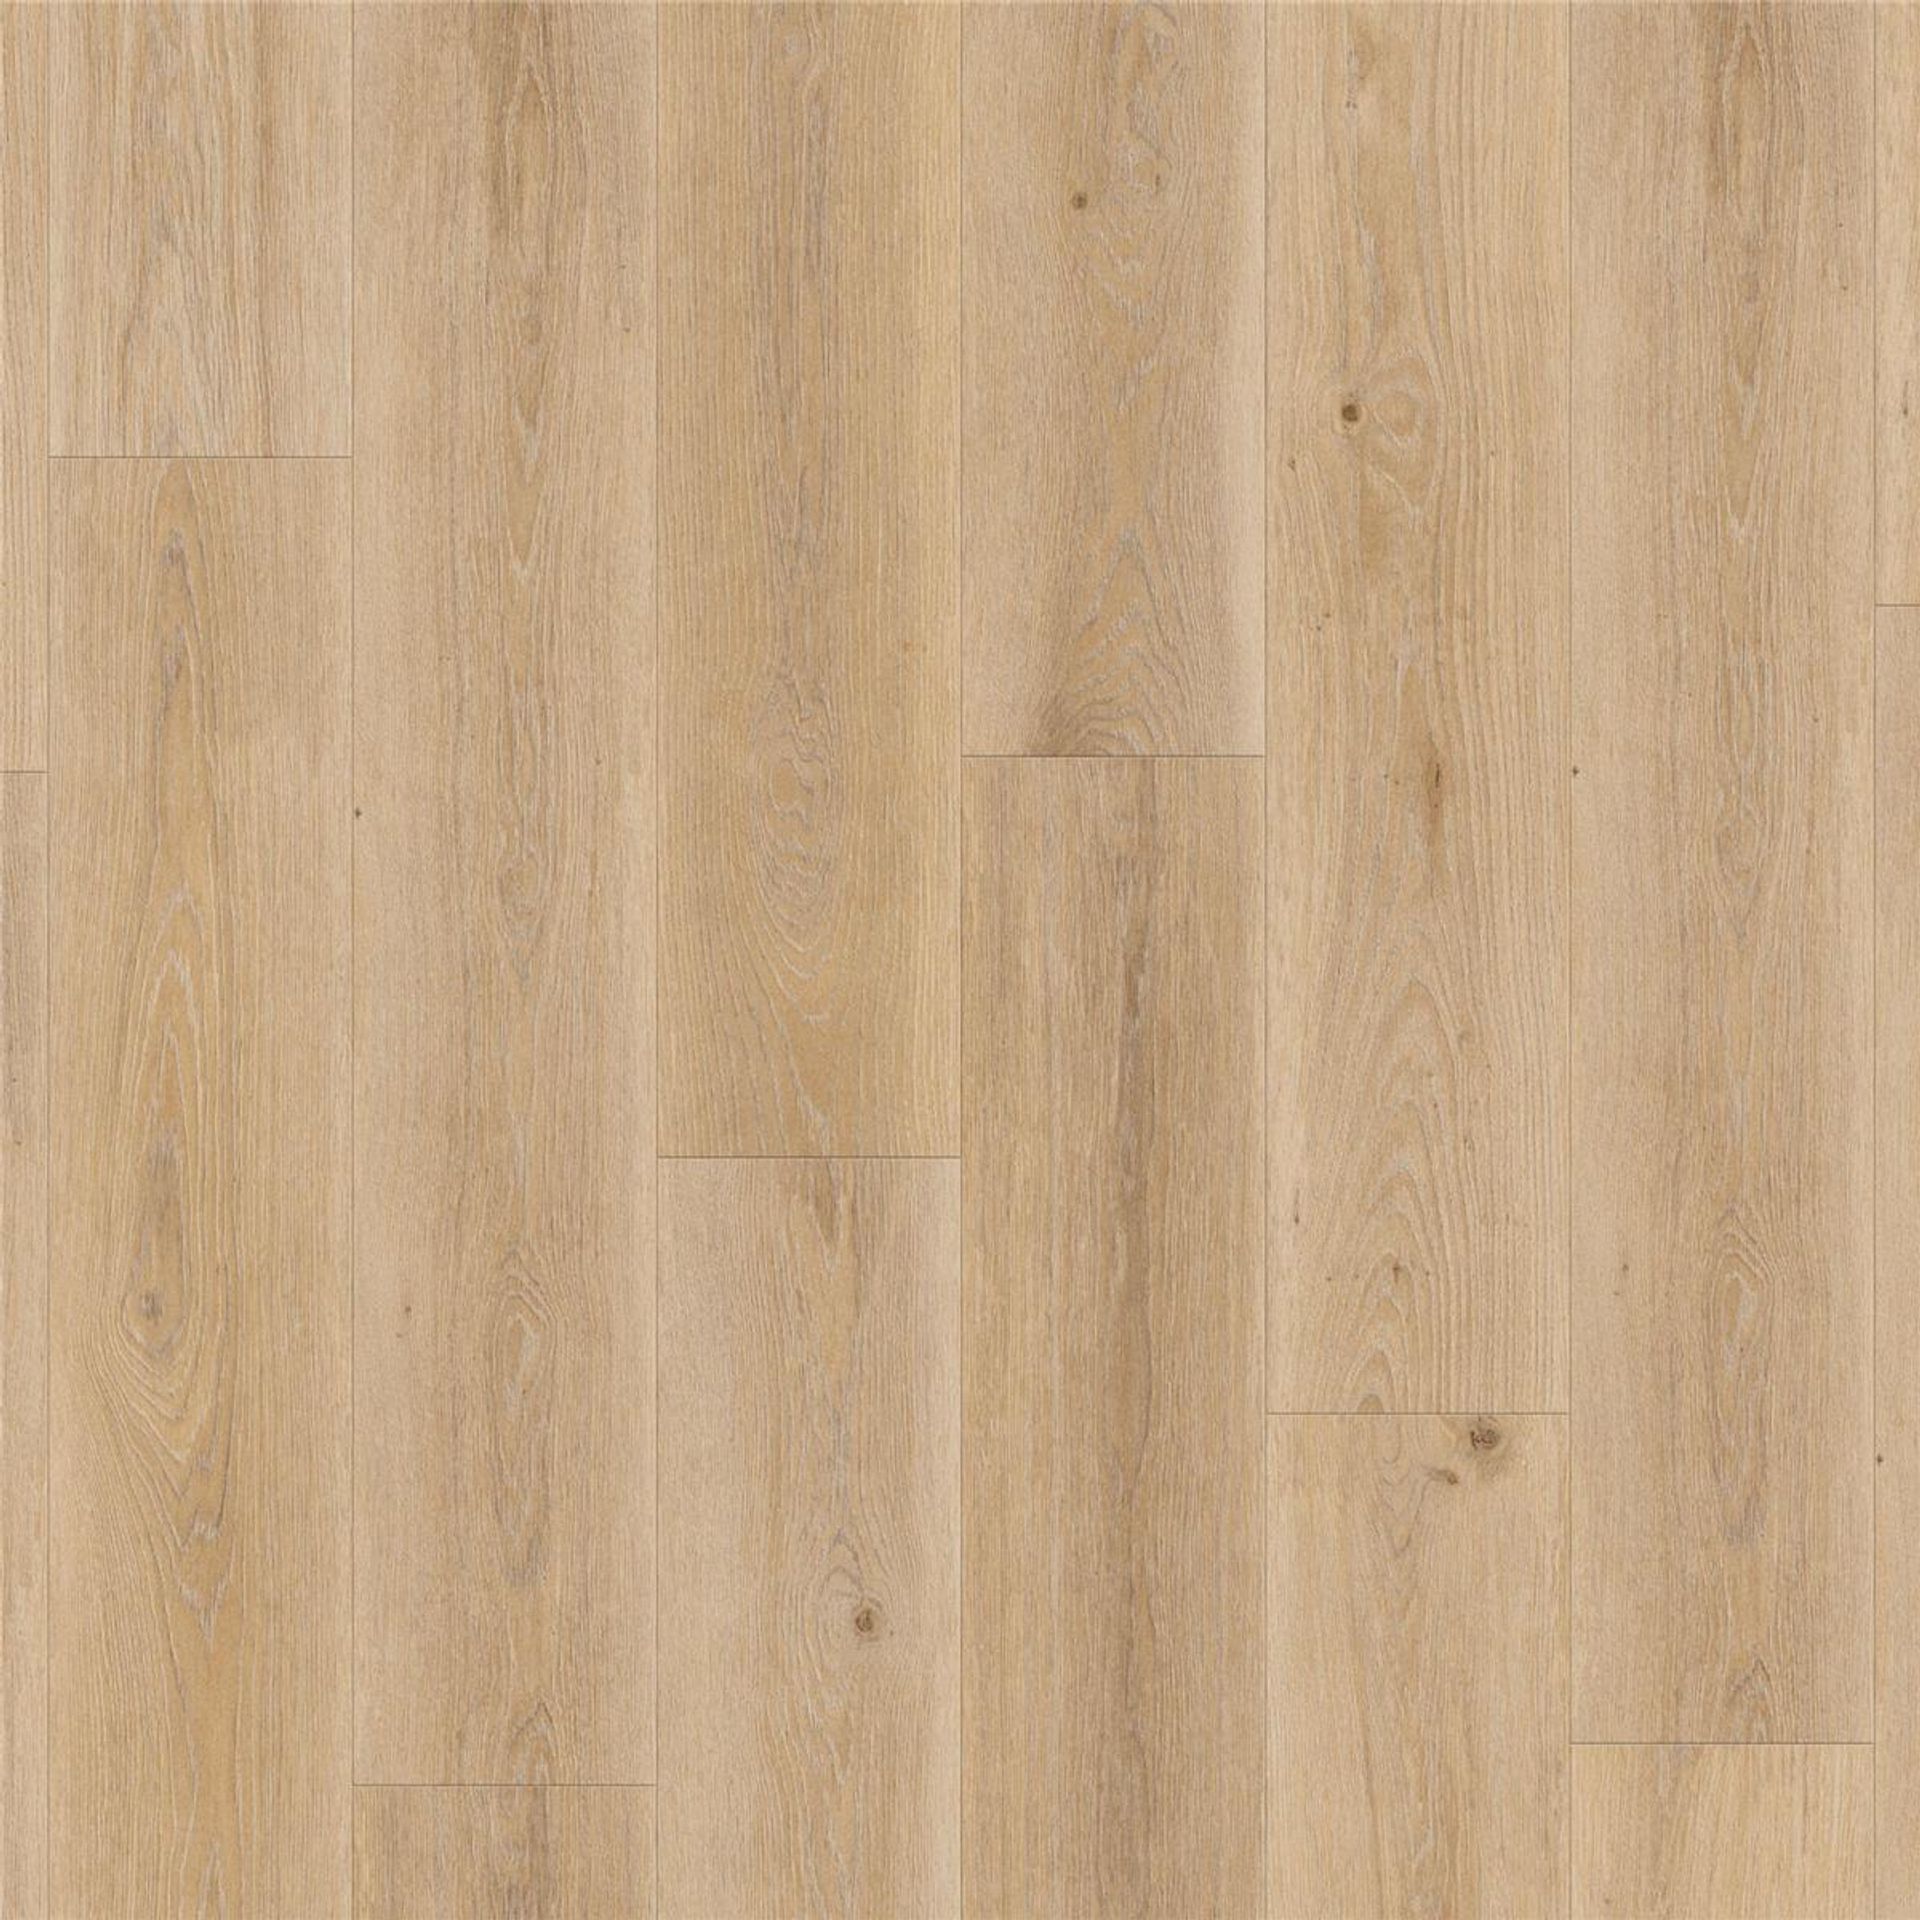 Designboden AUTHENTICS-Highland Oak-Golden Planke 120 cm x 20 cm - Nutzschichtdicke 0,70 mm